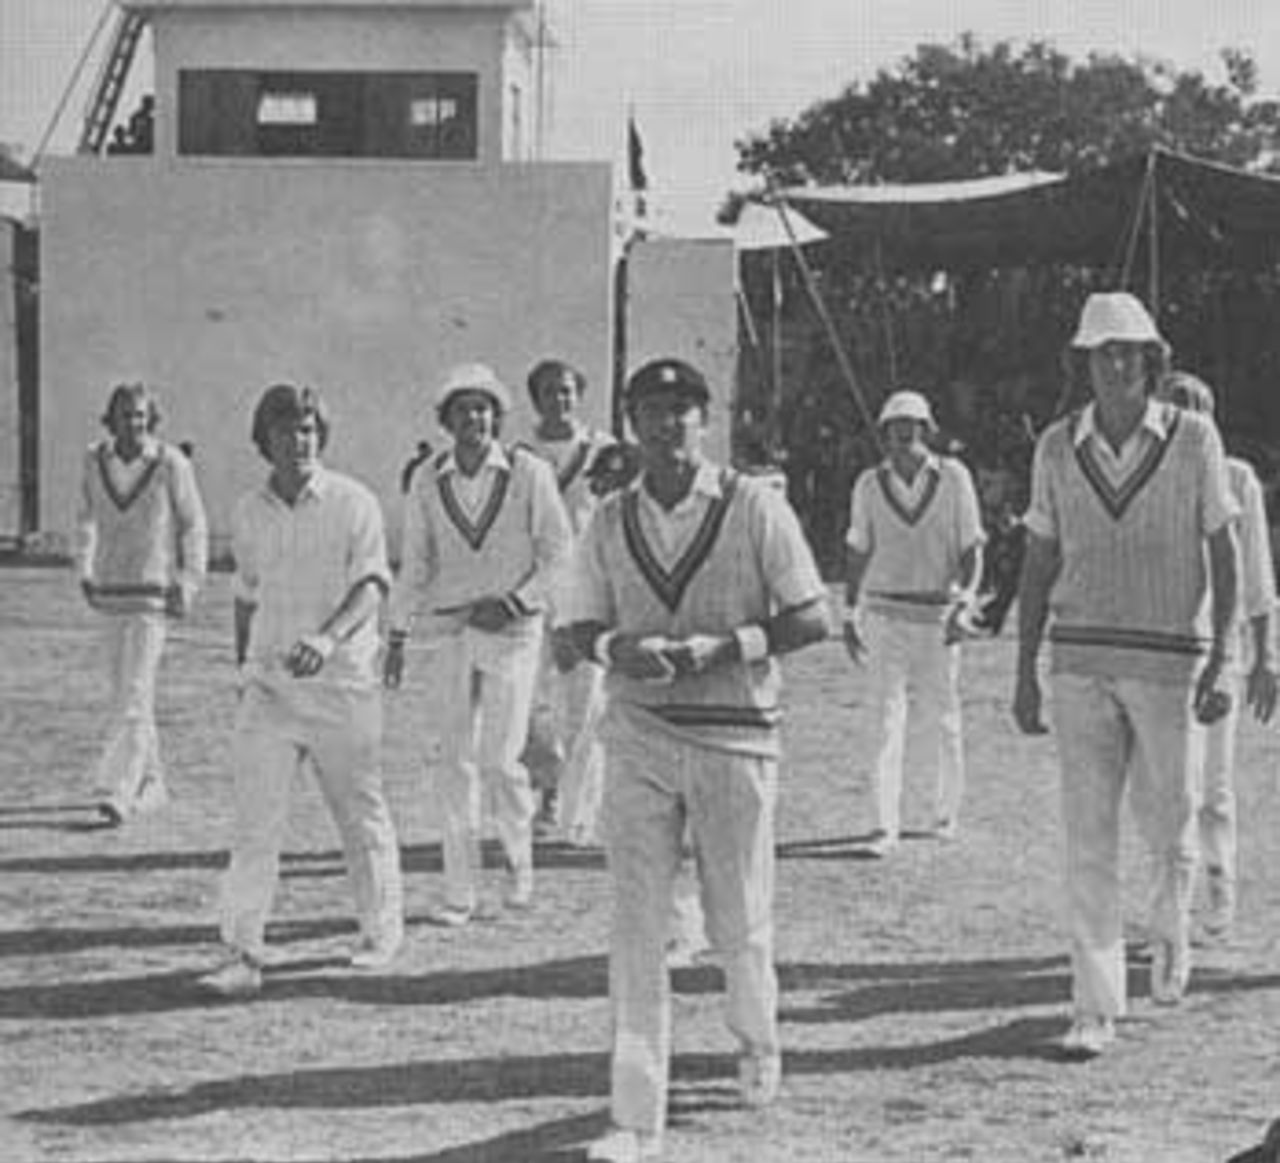 Geoff Boycott leads the England side for the first time against Pakistan, Pakistan v England, Karachi, January 18, 1978